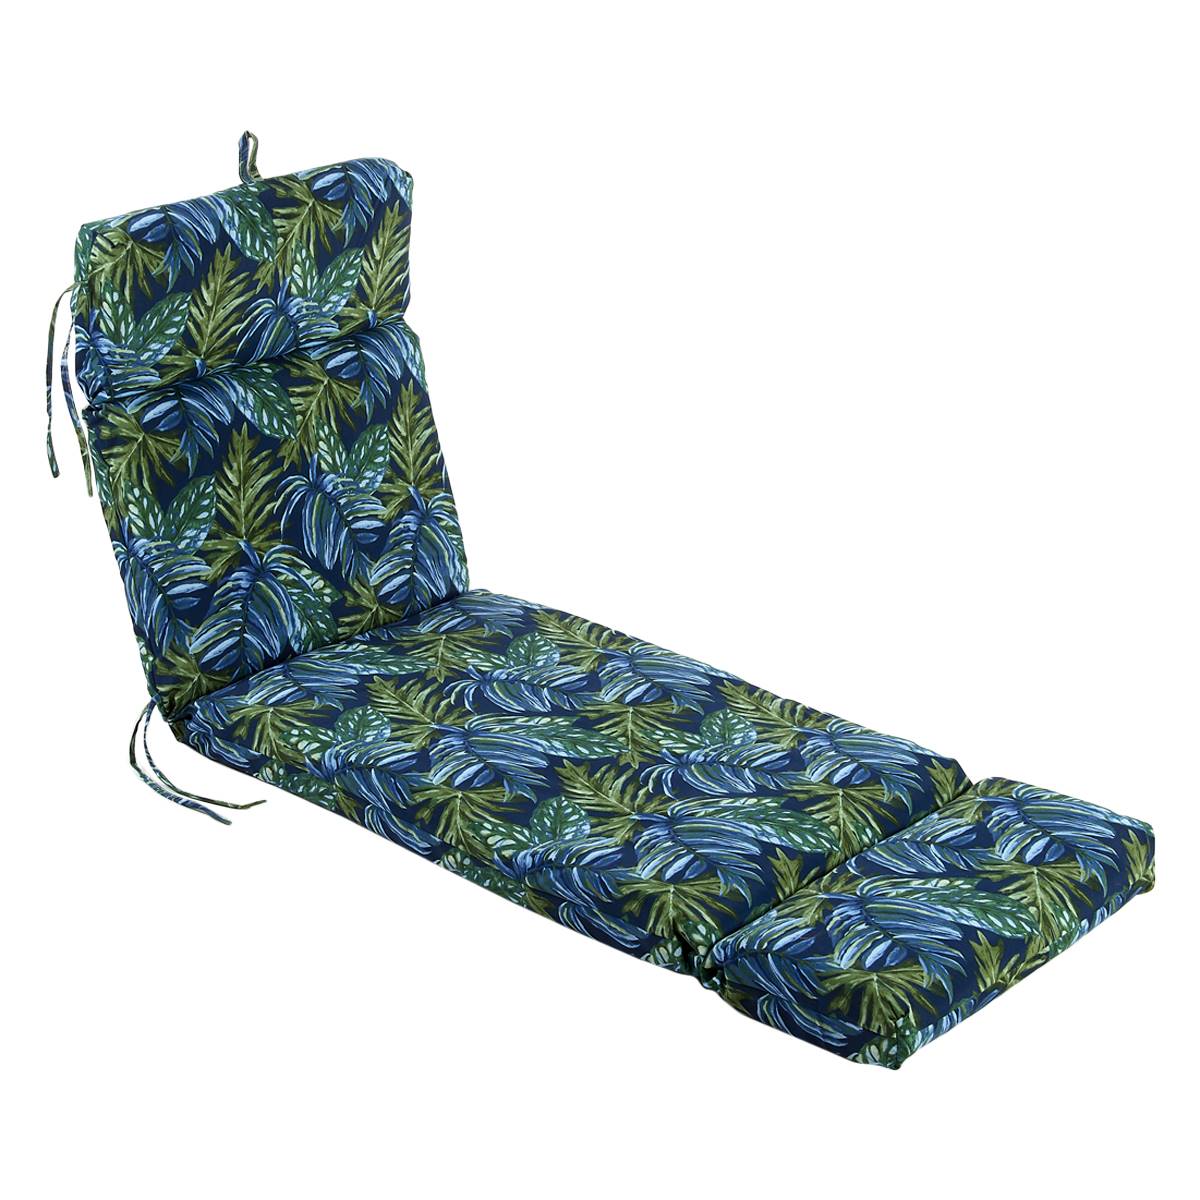 Jordan Manufacturing Chaise Cushion - Blue/Green Tropical Leaf